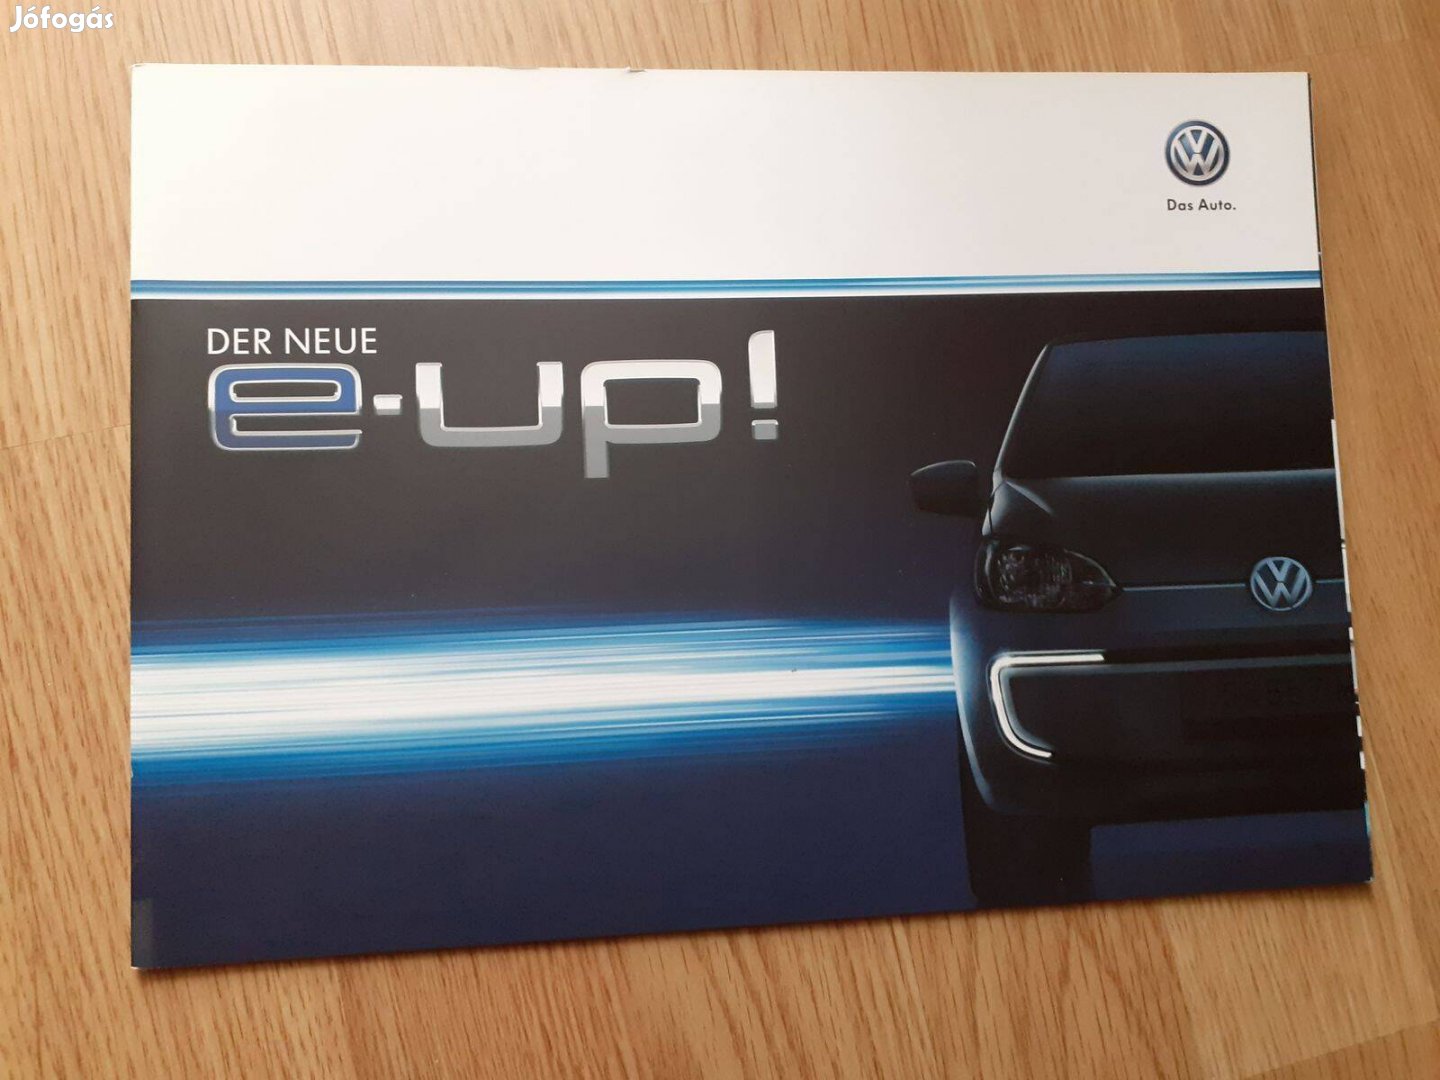 Volkswagen e-Up! prospektus - 2015, német nyelvű